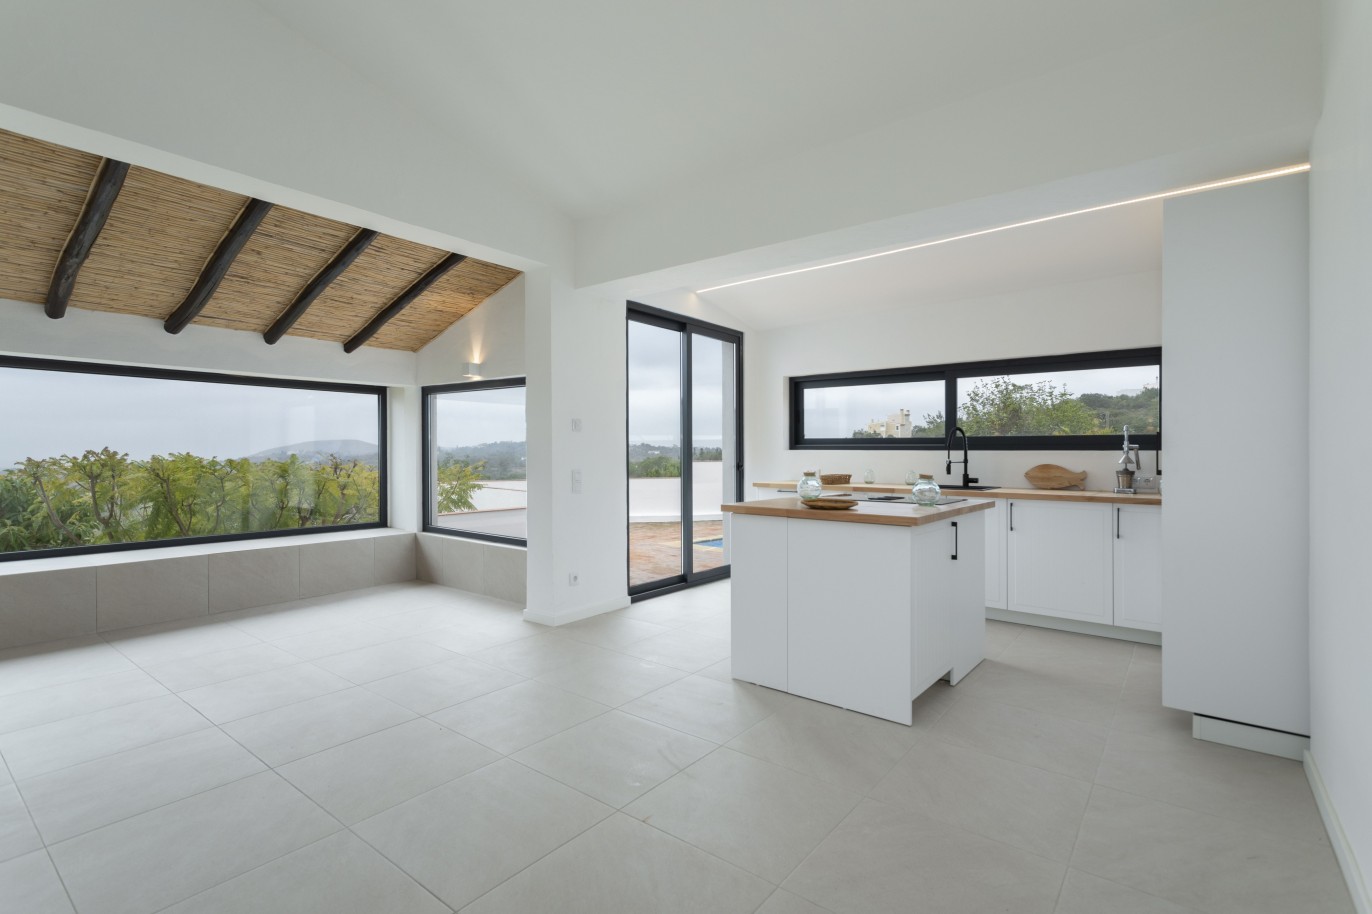 3 bedroom villa with sea view and pool, for sale in Santa Barbara, Algarve_245045